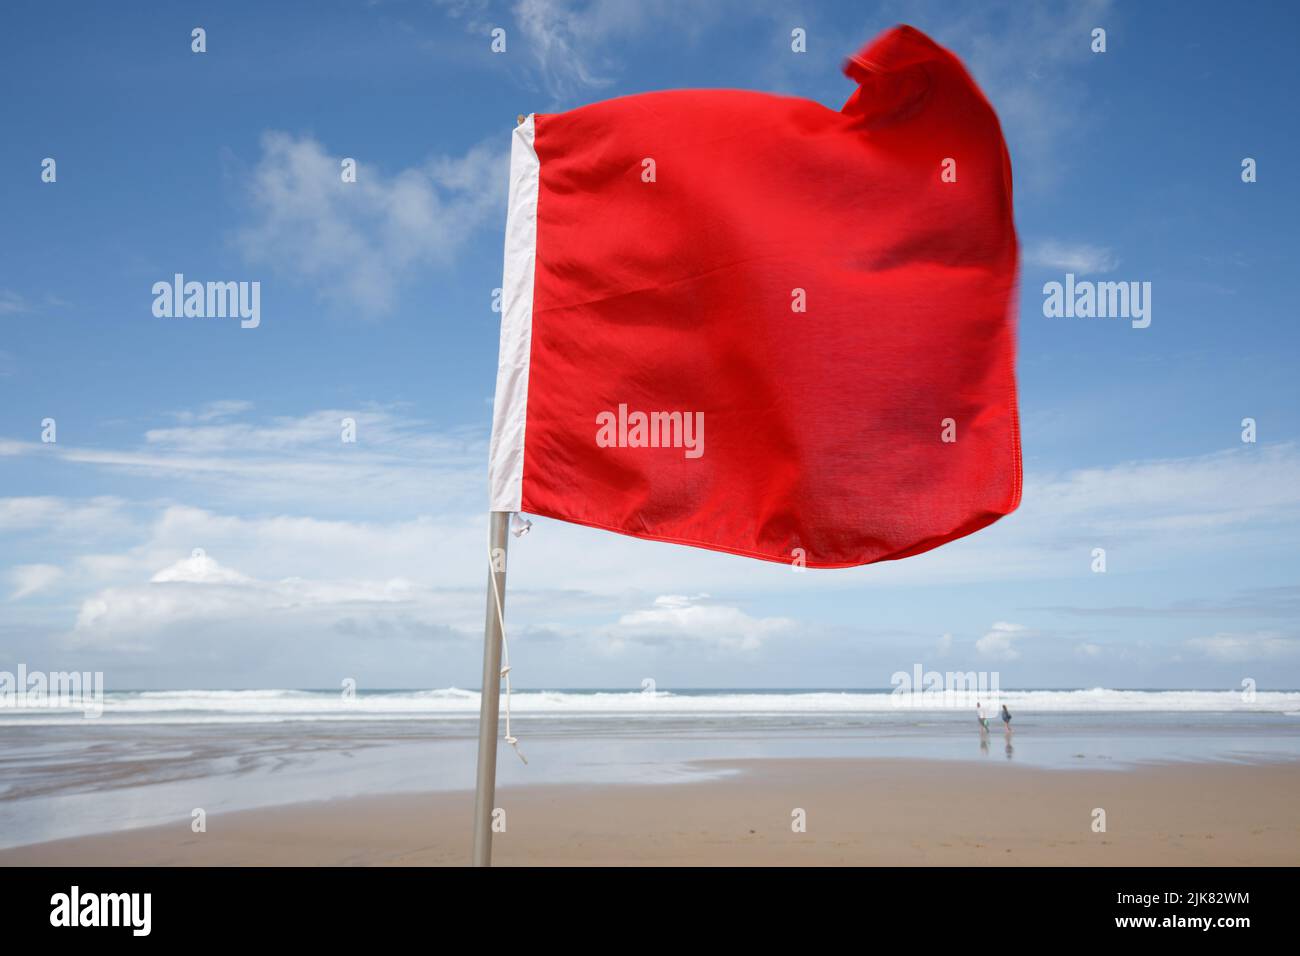 Rote Flagge am Strand. An einem windigen, aber sonnigen Sommertag weht eine rote Flagge im Wind, die Schwimmer vor gefährlichen Surfbedingungen warnt. Rote Flagge, Stockfoto